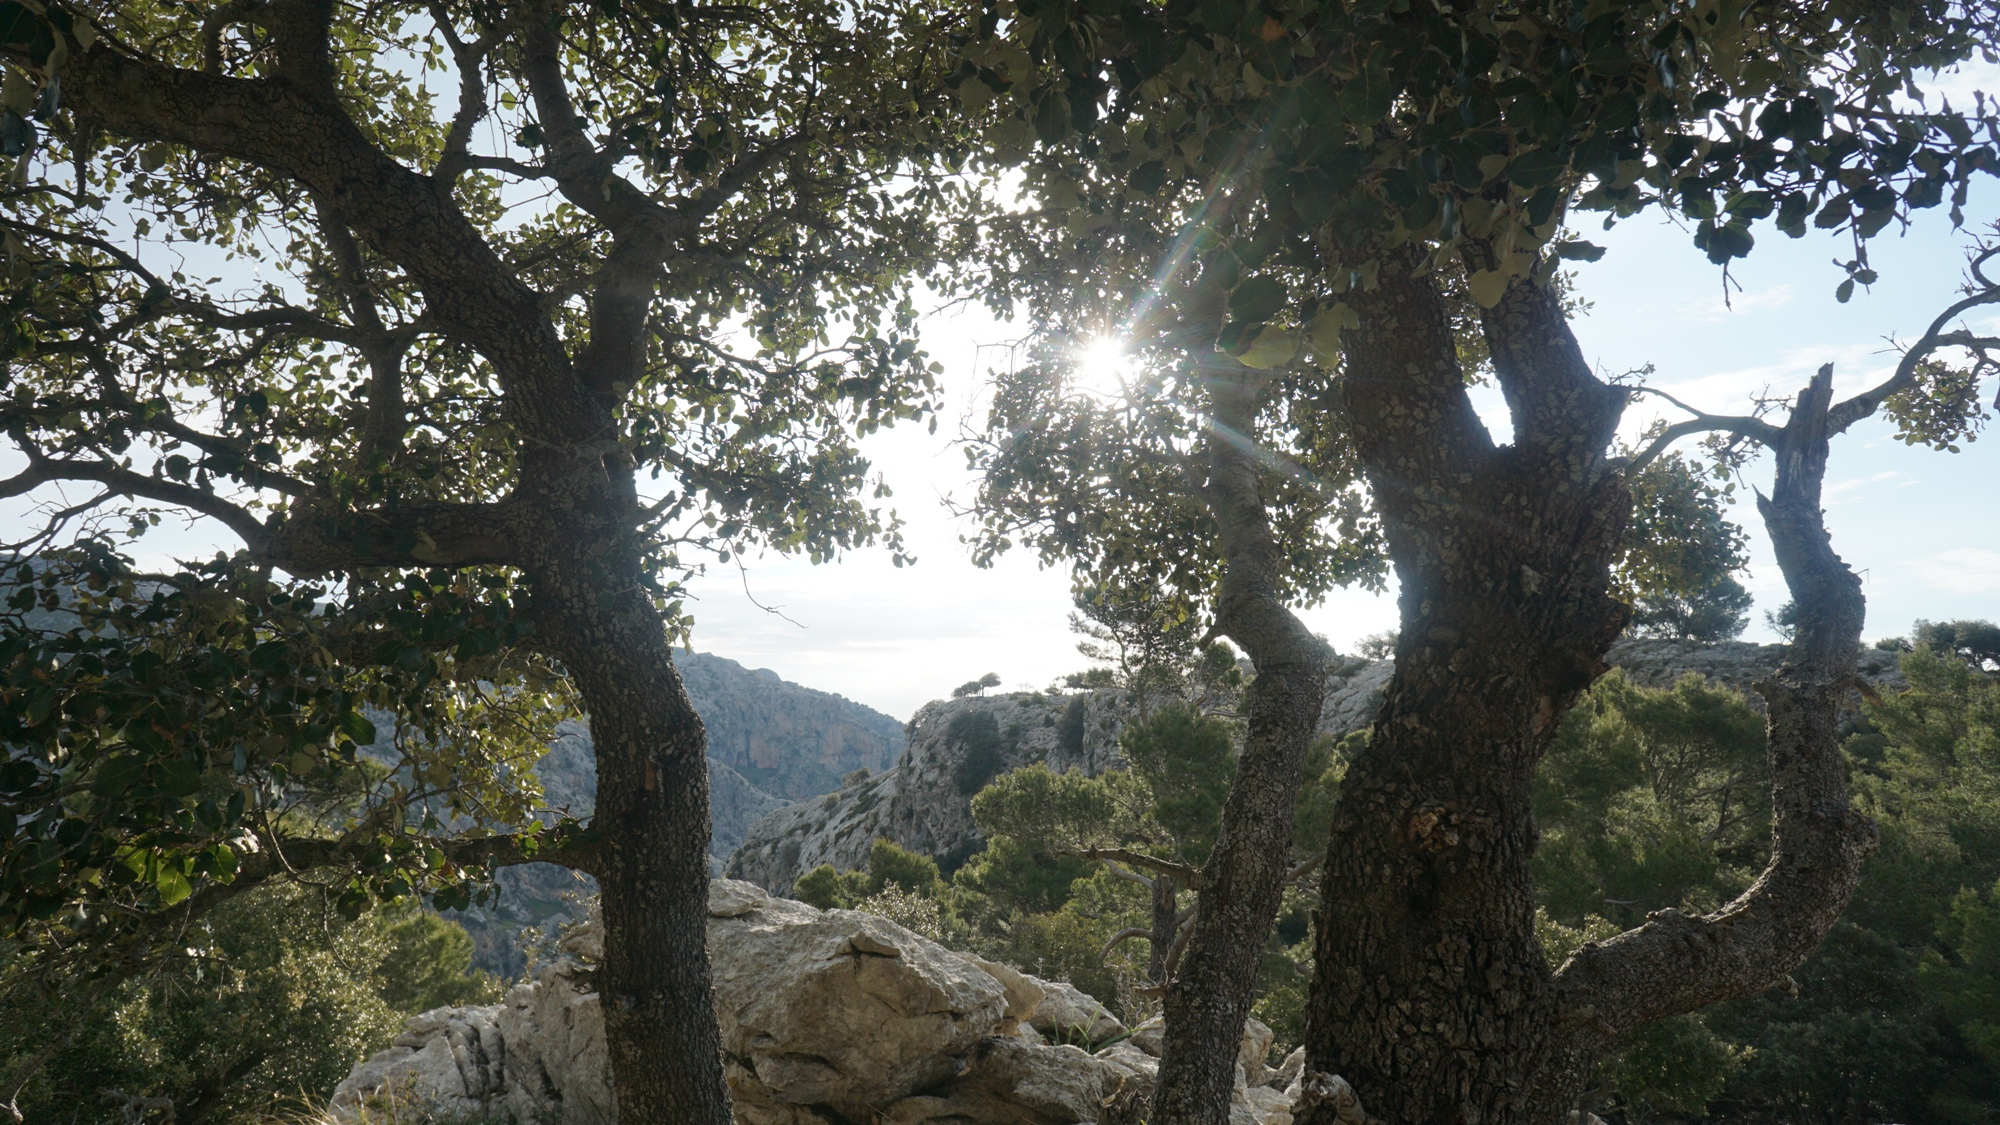 Steineichen am Coll des Bosc in der Serra de Tramuntana.